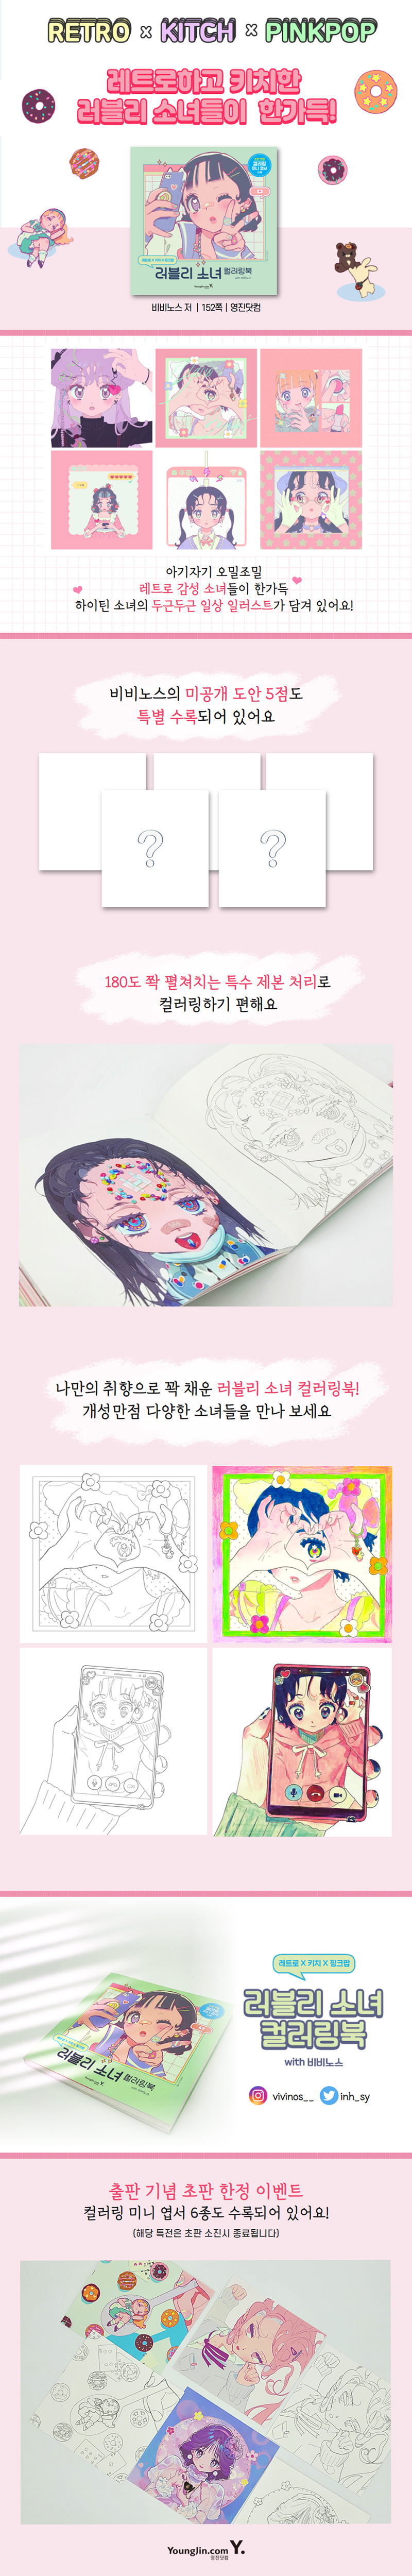 래트로 X 키치 X 핑크팝 러블리 소녀 컬러링북 with 비비노스 [DFPC]